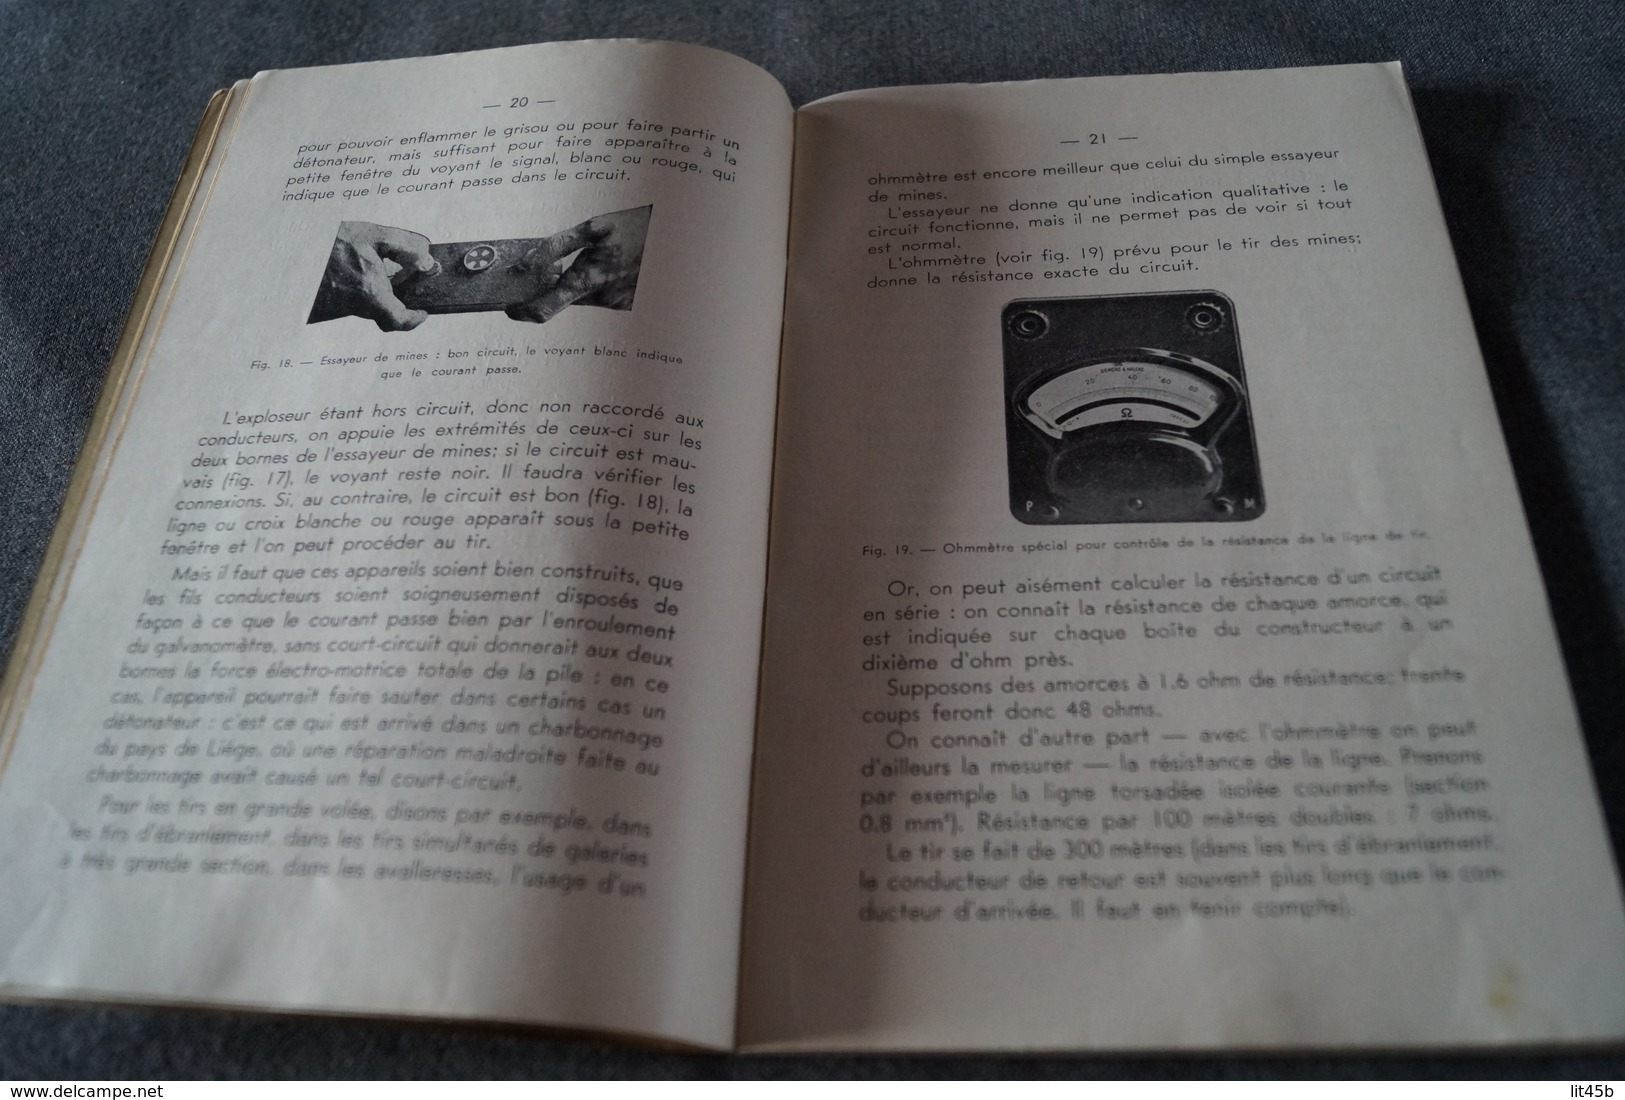 RARE,Un Mot aux Boutefaux 1939 ,mine,mineurs,charbonnage,80 pages,21 Cm. sur 14 Cm.